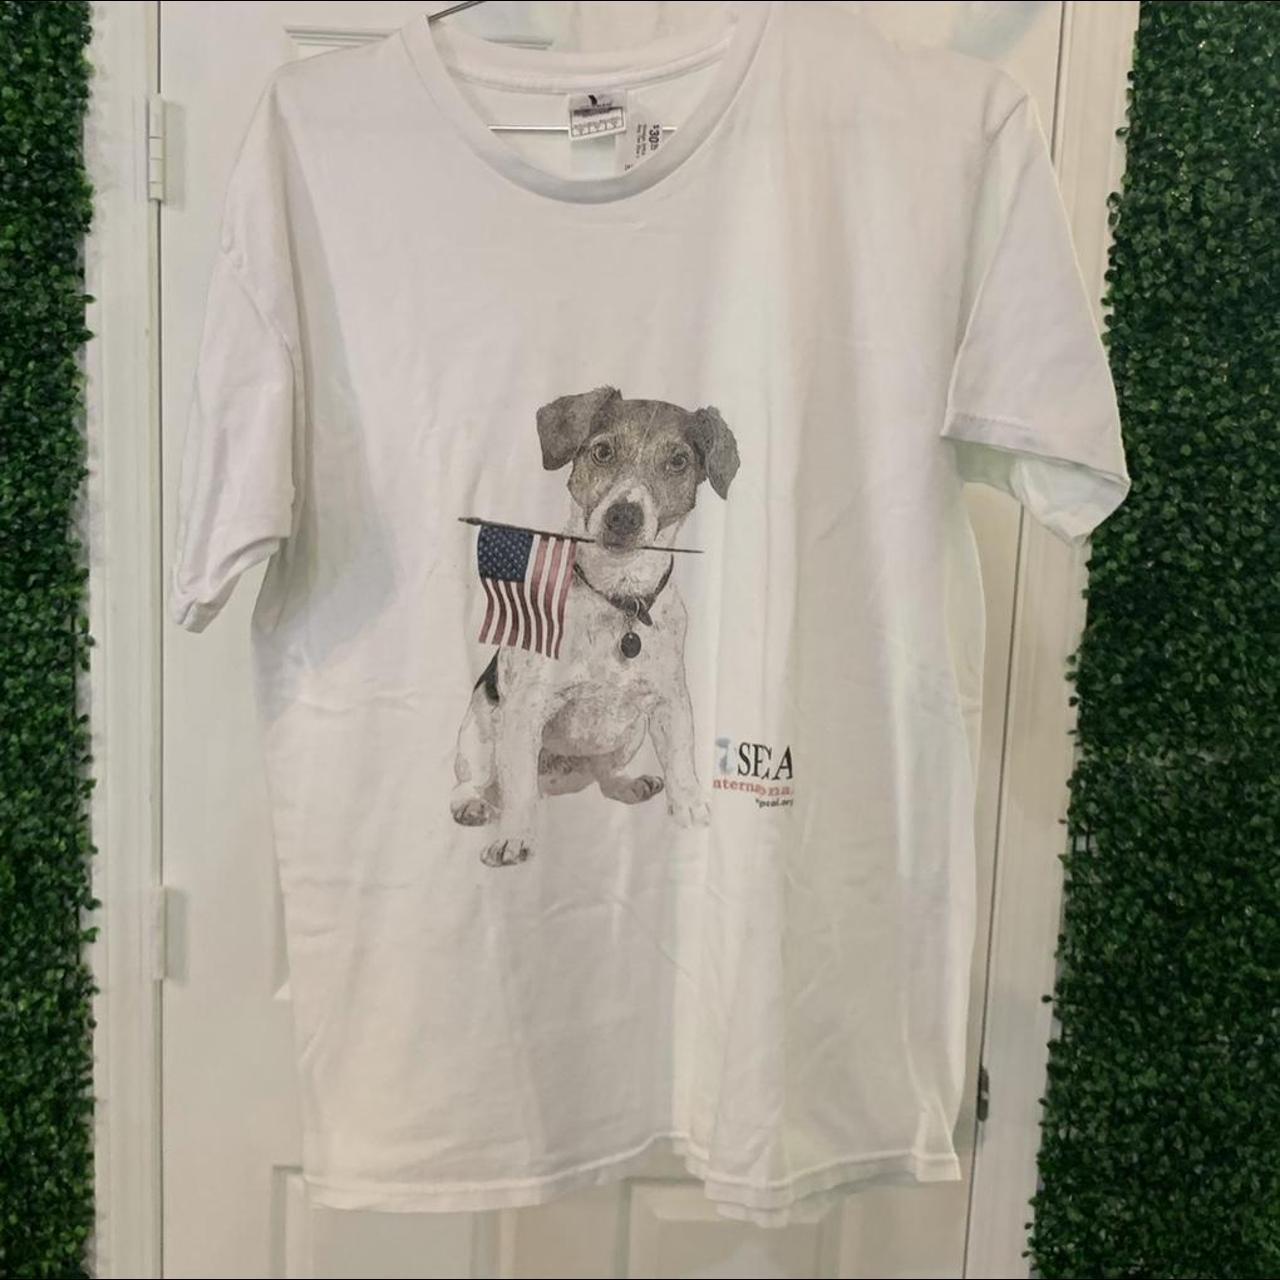 seahawks dog shirt